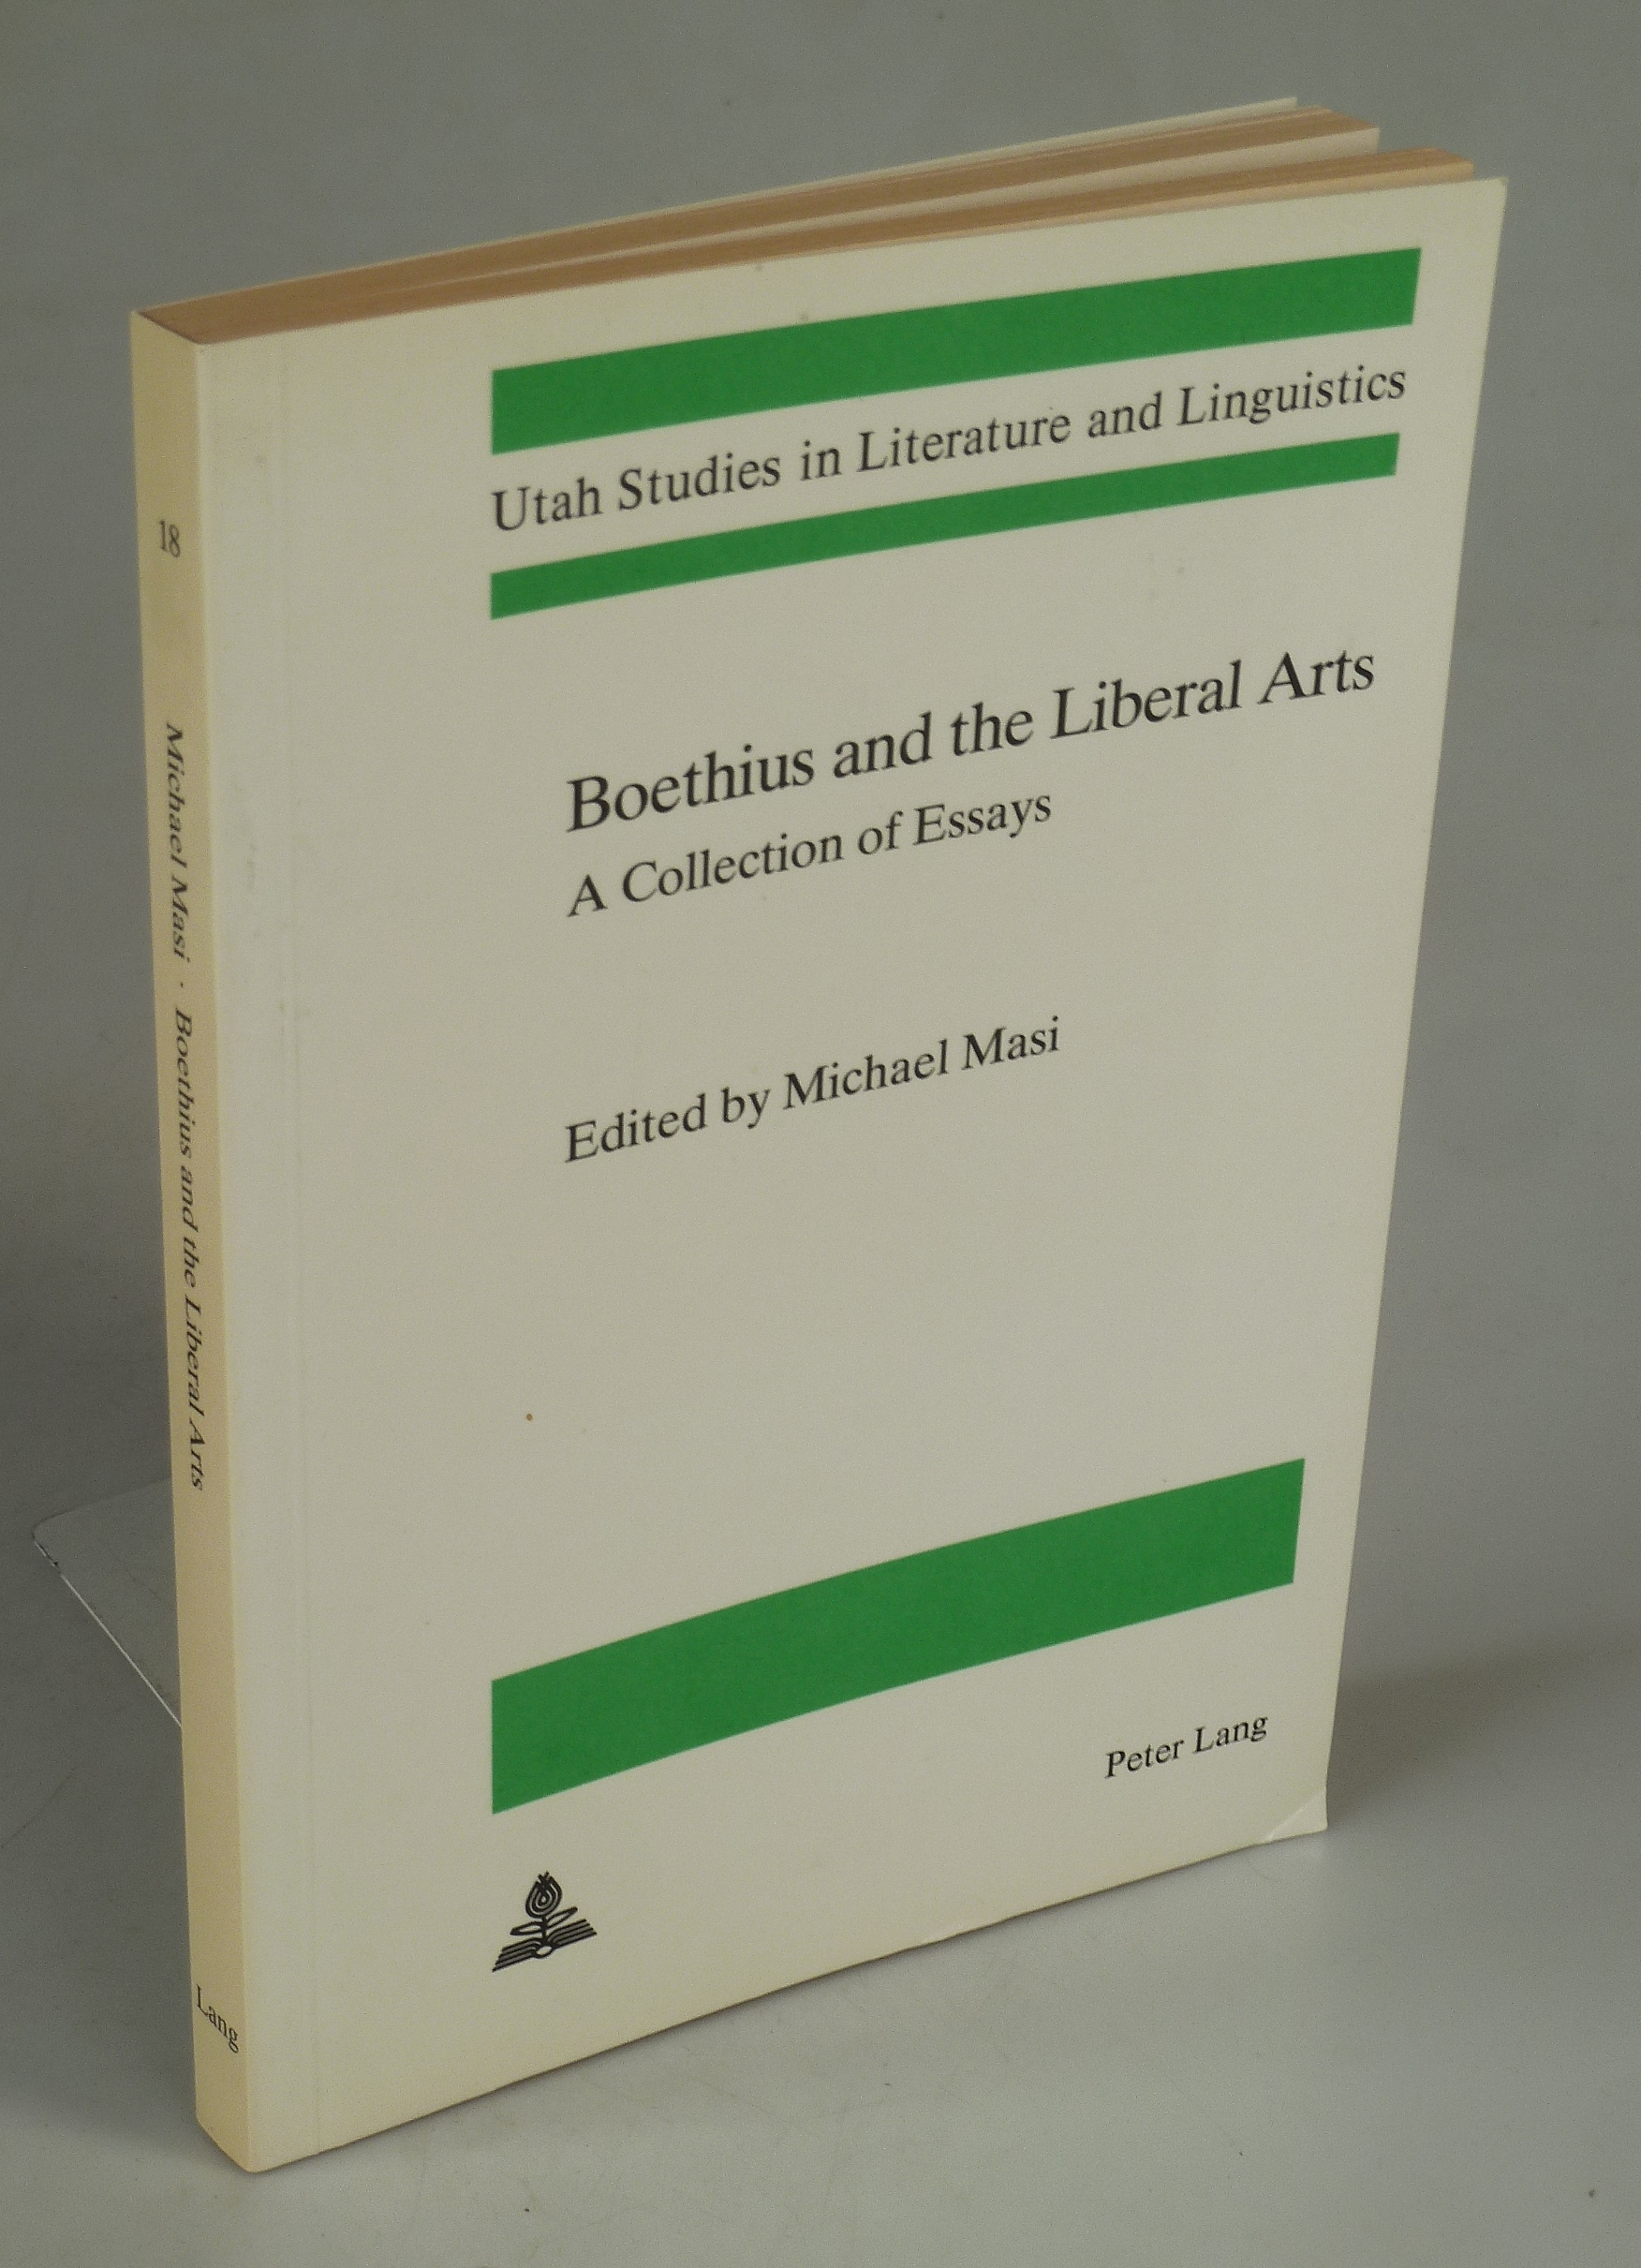 Boethius and the Liberal Arts. - MASI, Michael (Edit.).